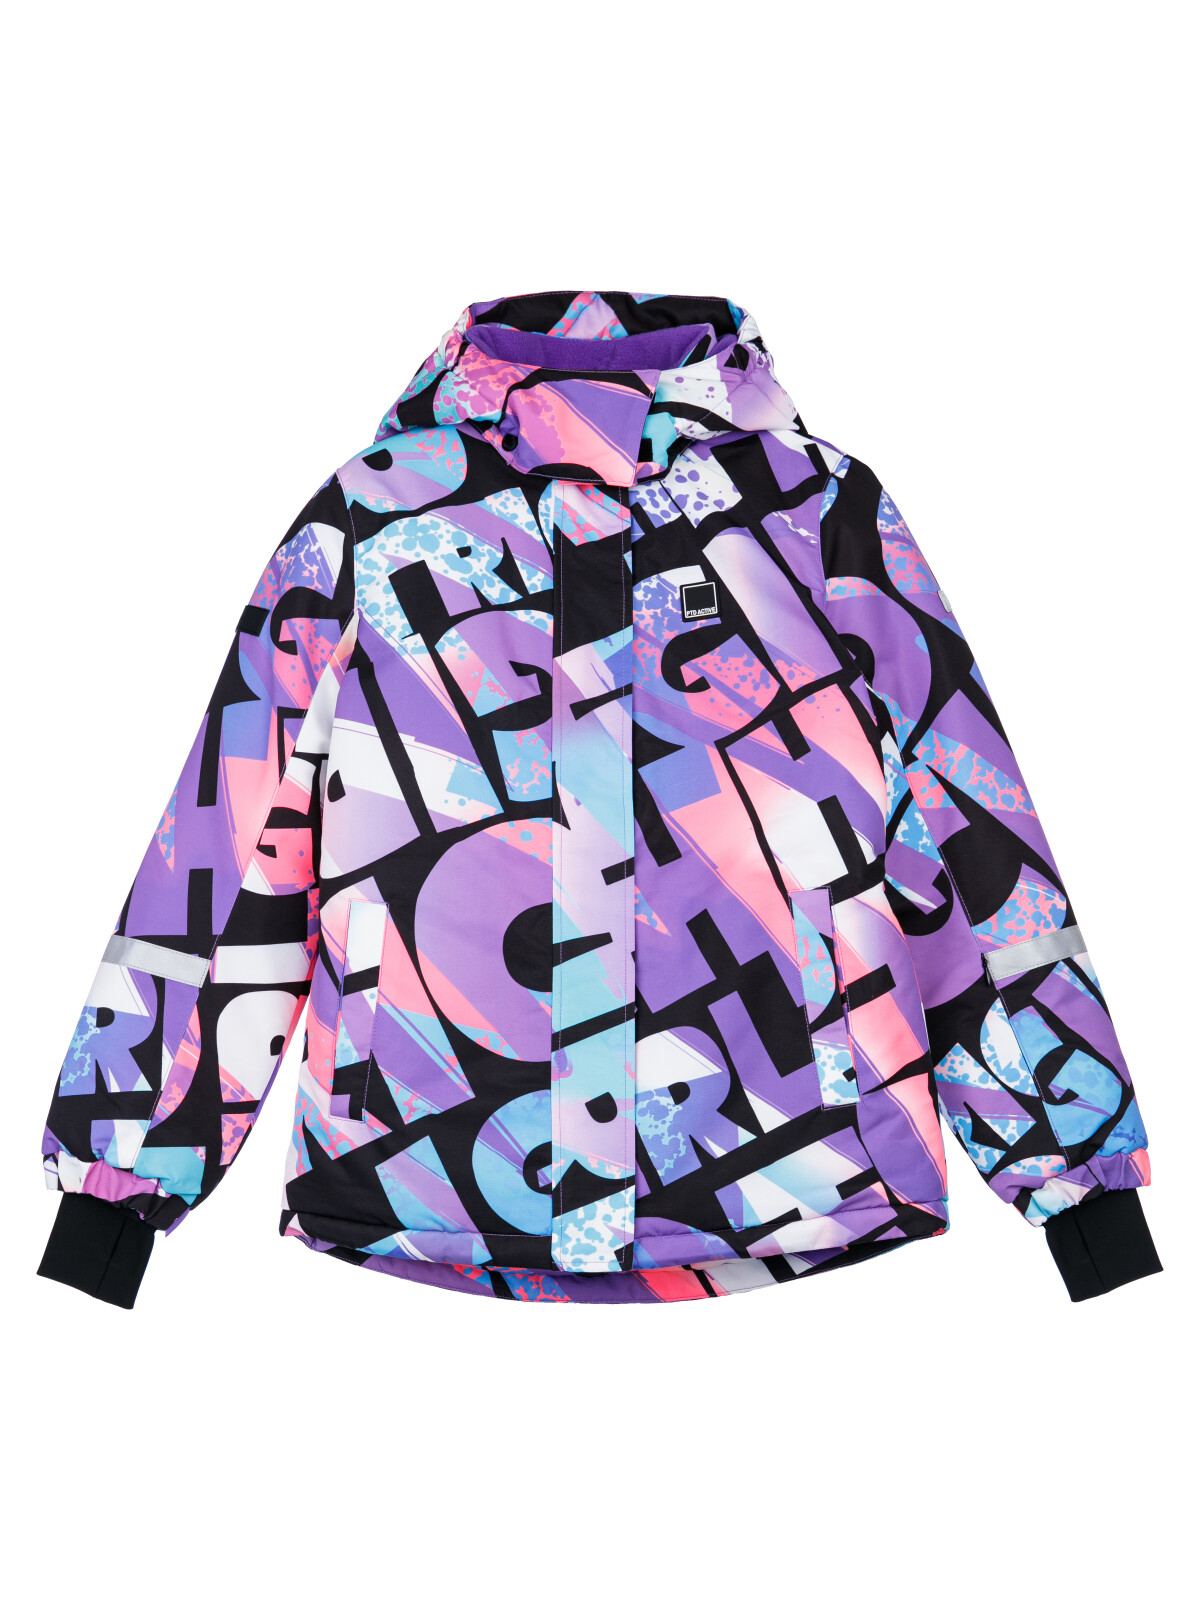 Куртка текстильная с полиуретановым покрытием для девочек PlayToday, цветной, 146